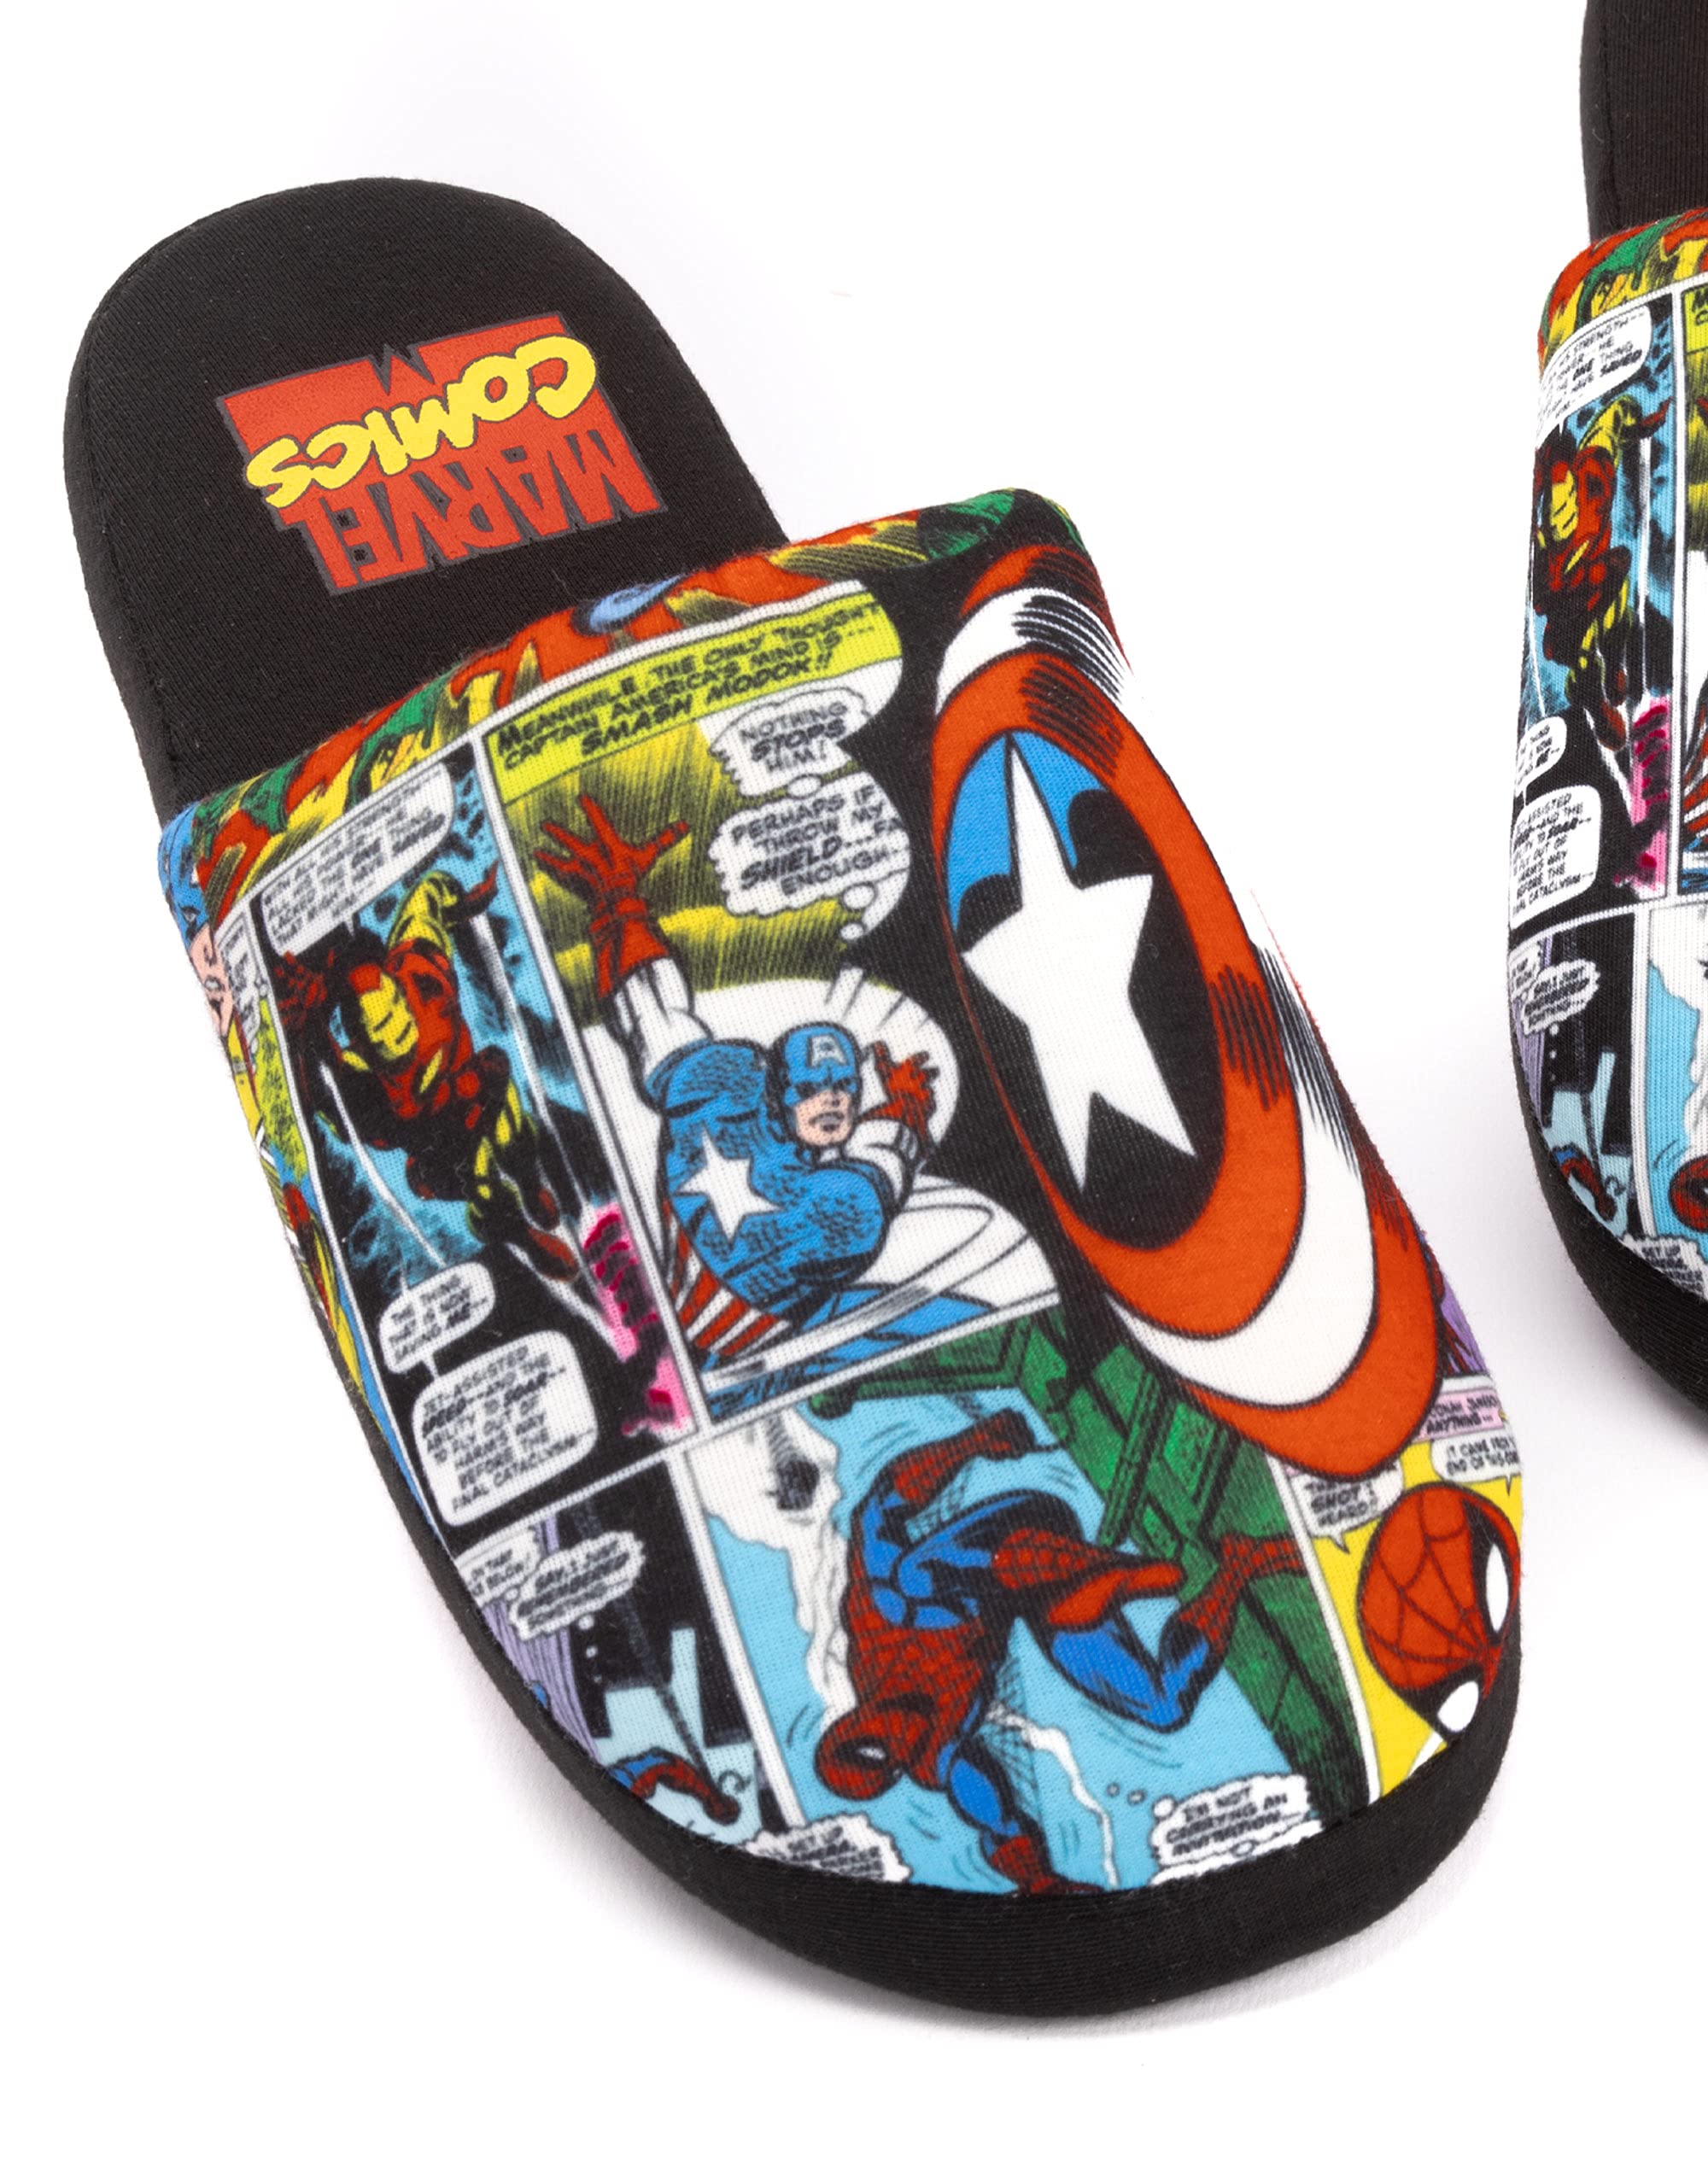 Marvel Avengers Slippers Comic Mens Slip On House Shoes Loafers